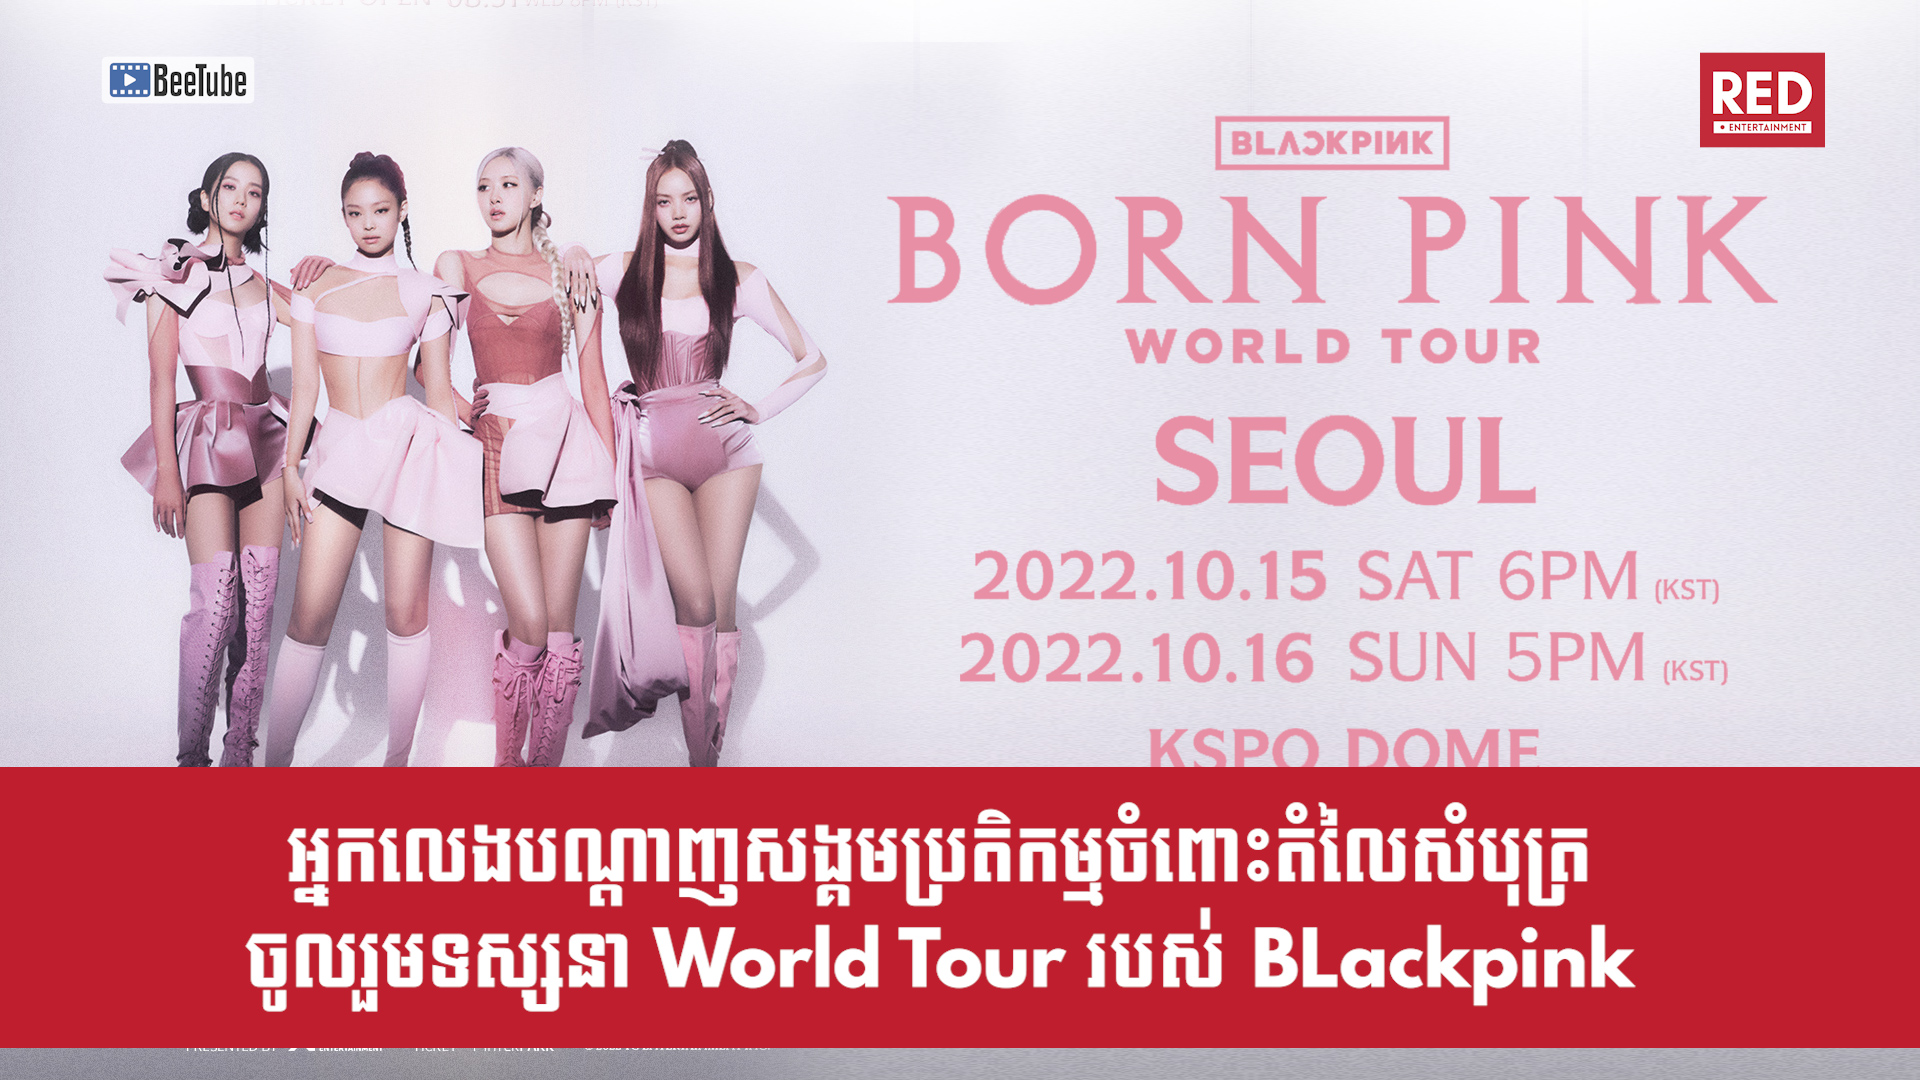 អ្នកលេងបណ្តាញសង្គមមានប្រតិកម្មចំពោះតំលៃសំបុត្រចូលរួមទស្សនា World Tour របស់ Blackpink 